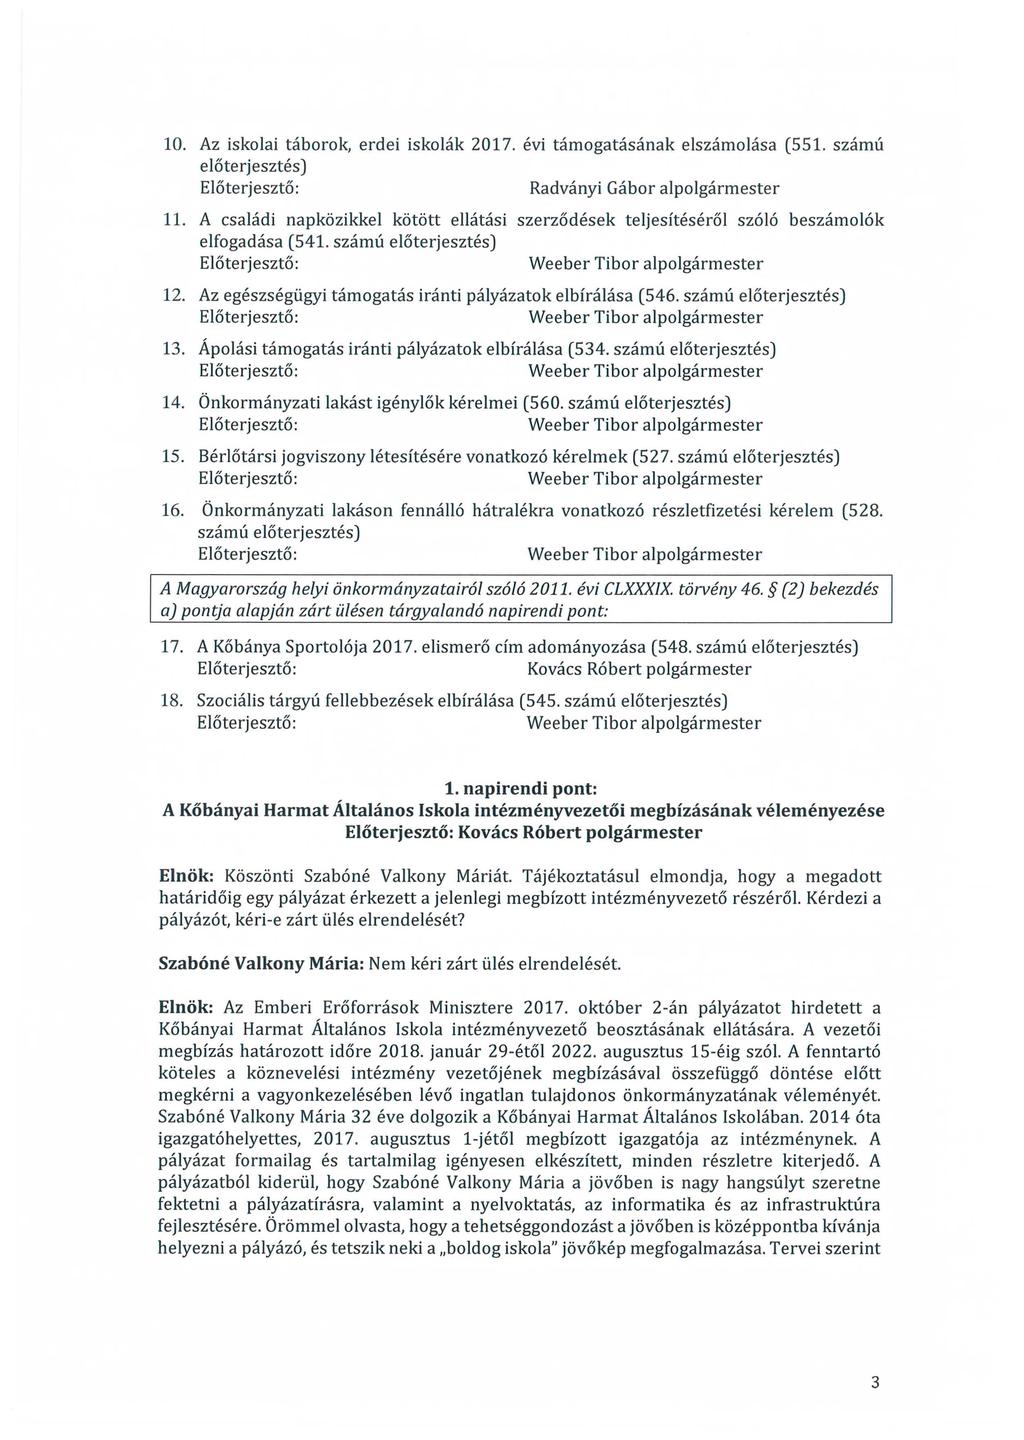 10. Az iskolai táborok, erdei iskolák 2017. évi támogatásának elszámolása (551. számú előterjesztés) Radványi Gábor alpolgármester 11.